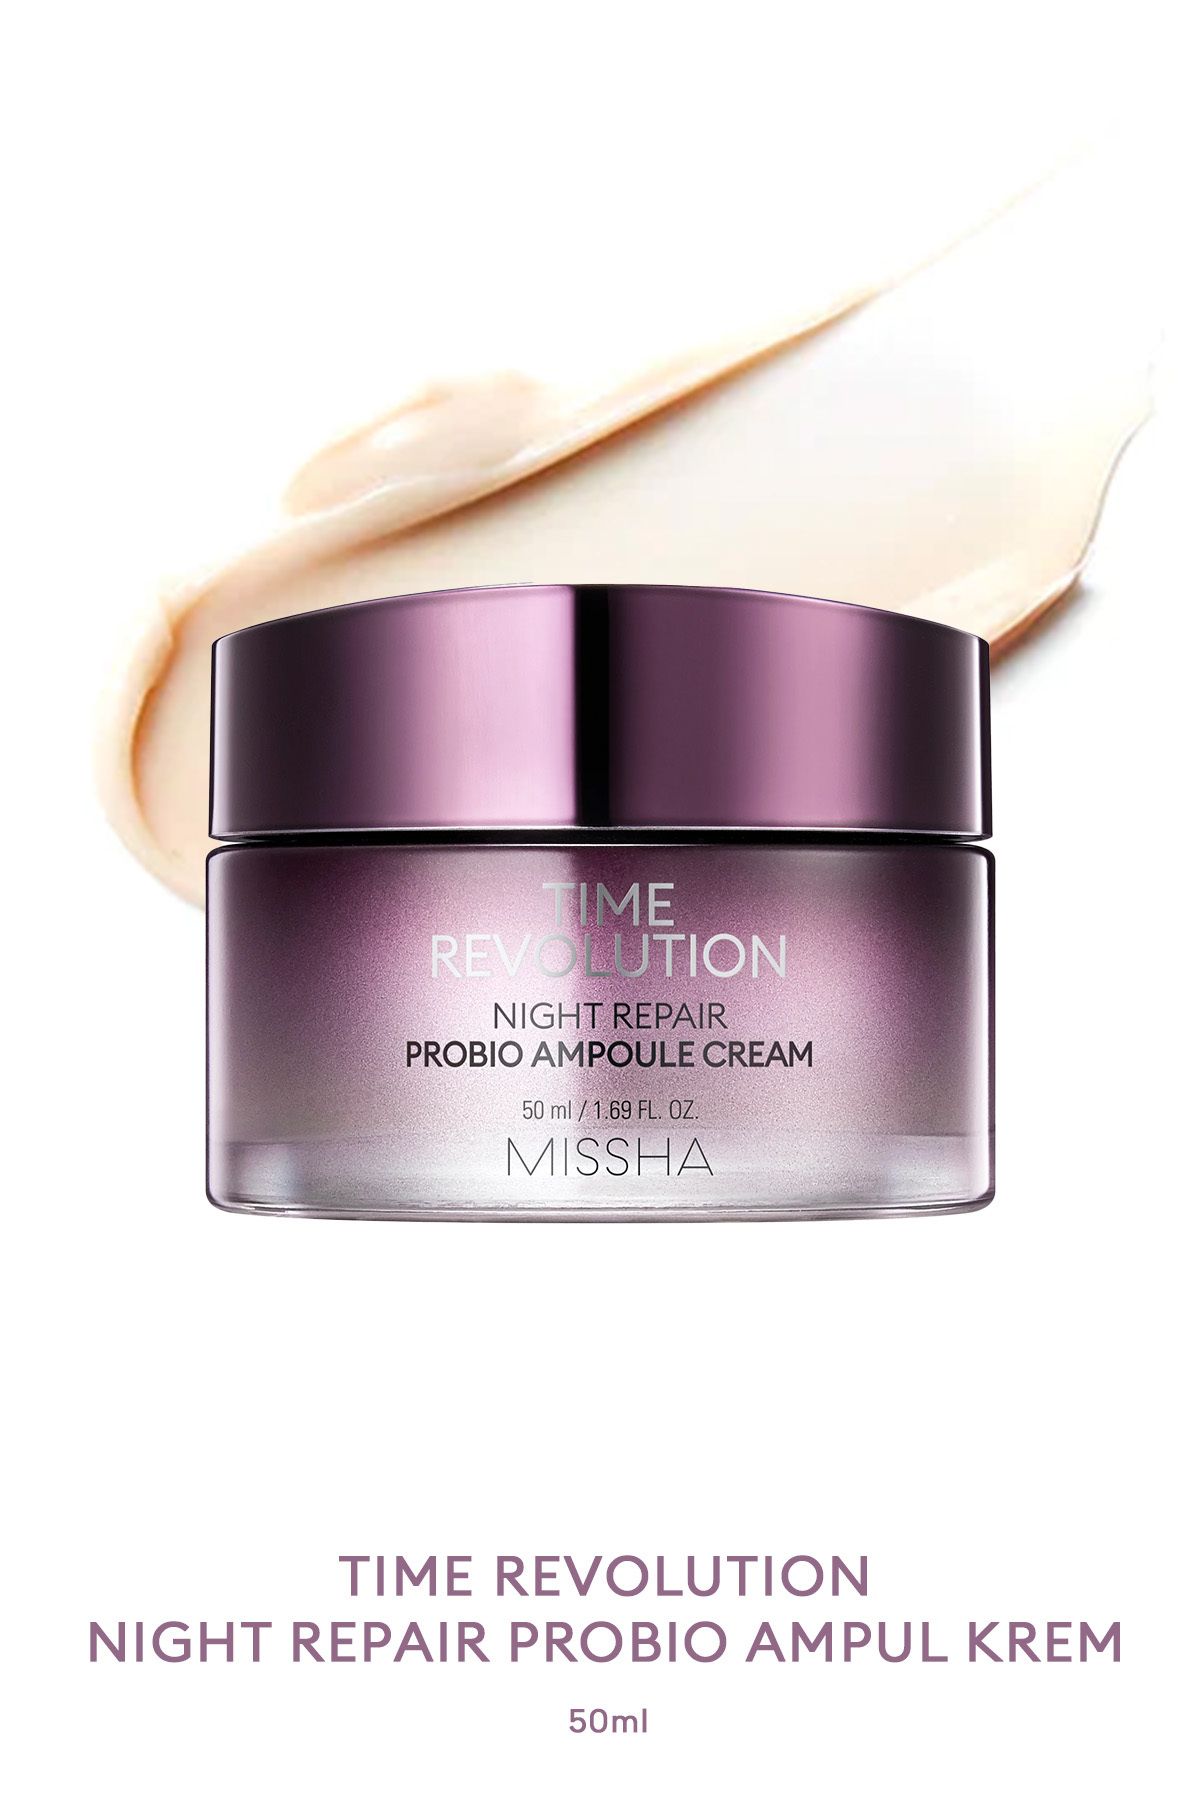 Missha Yaşlanma Karşıtı Probiyotik Içerikli Nemlendirici Krem 50ml Time Revolution Probio Ampoule Cream